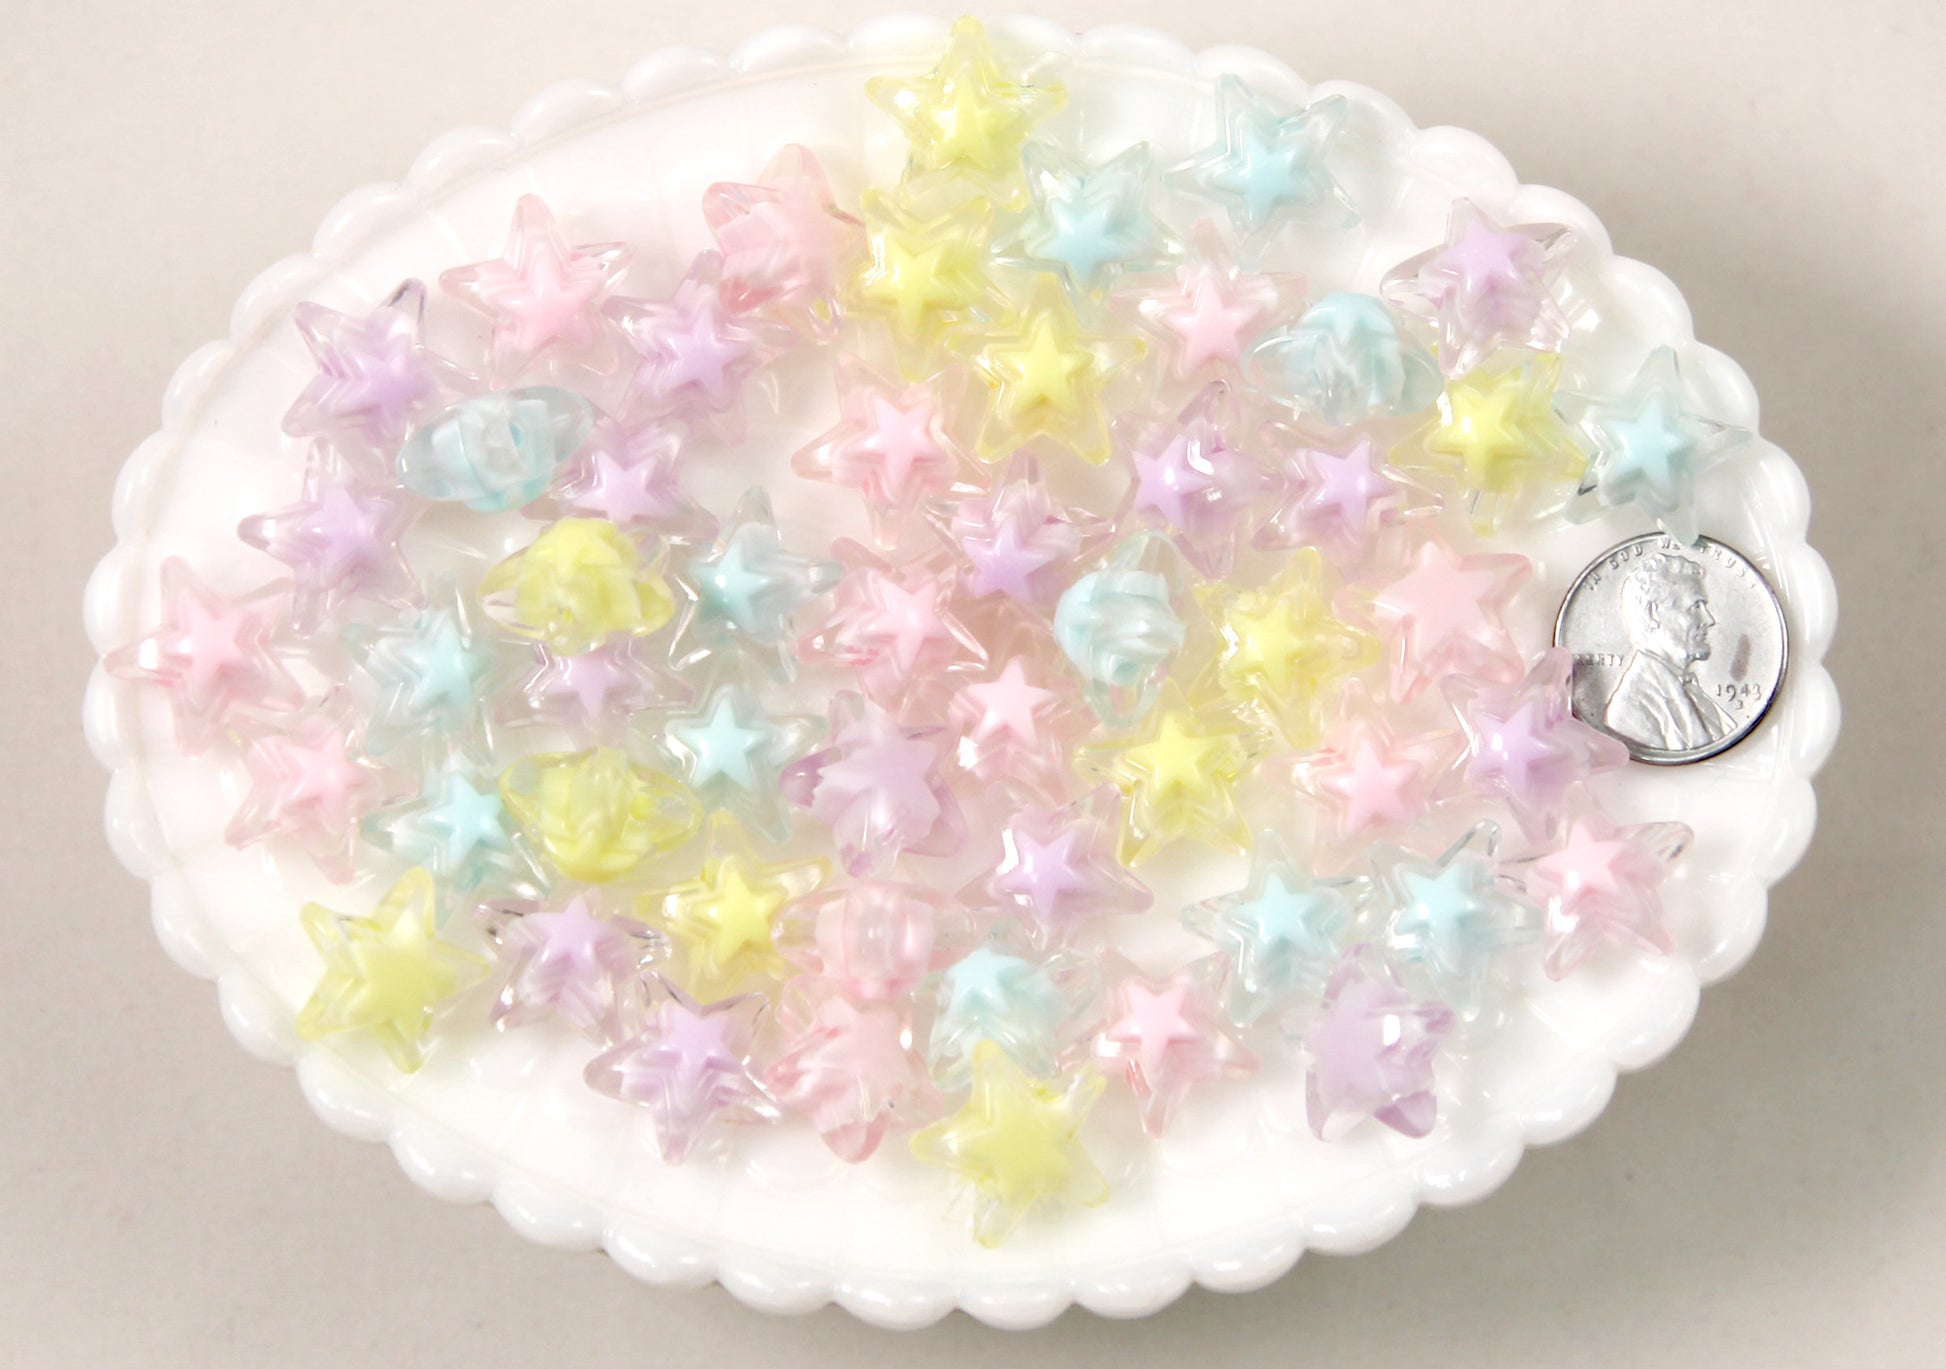 Pastel Beads - 15mm Pastel Snowflake Acrylic or Resin Beads - 100 pcs set